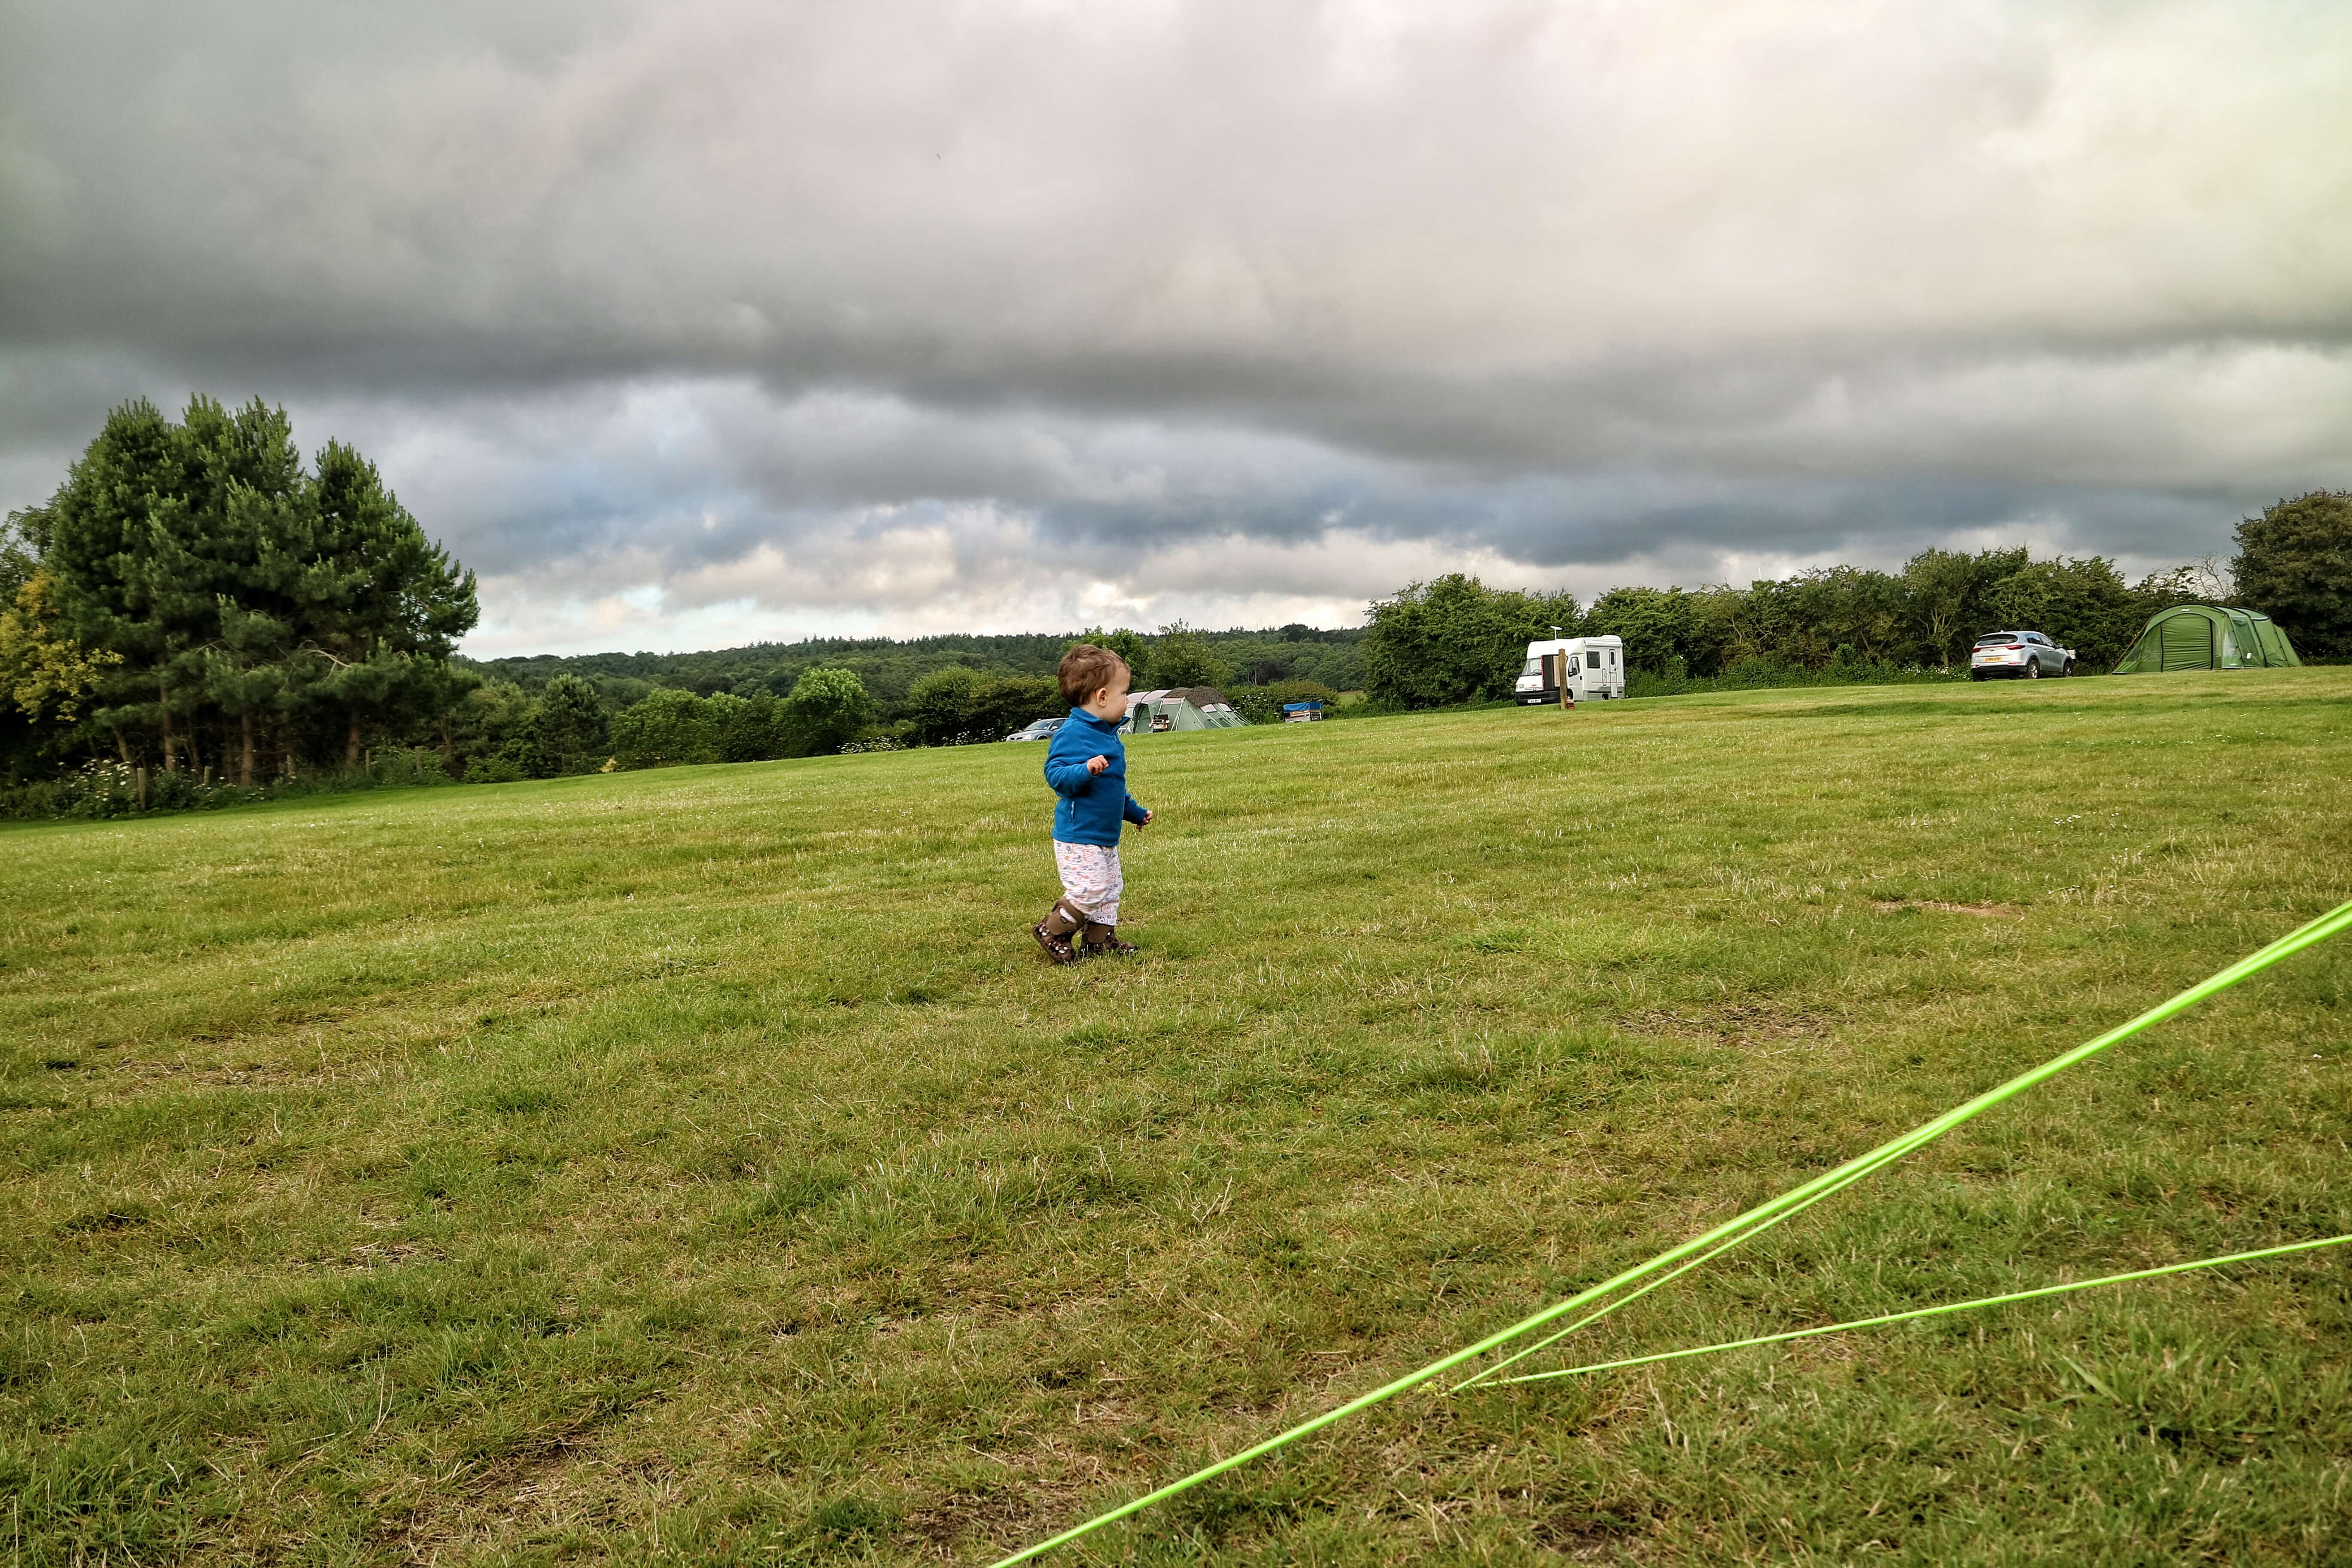 A toddler runs around a campsite